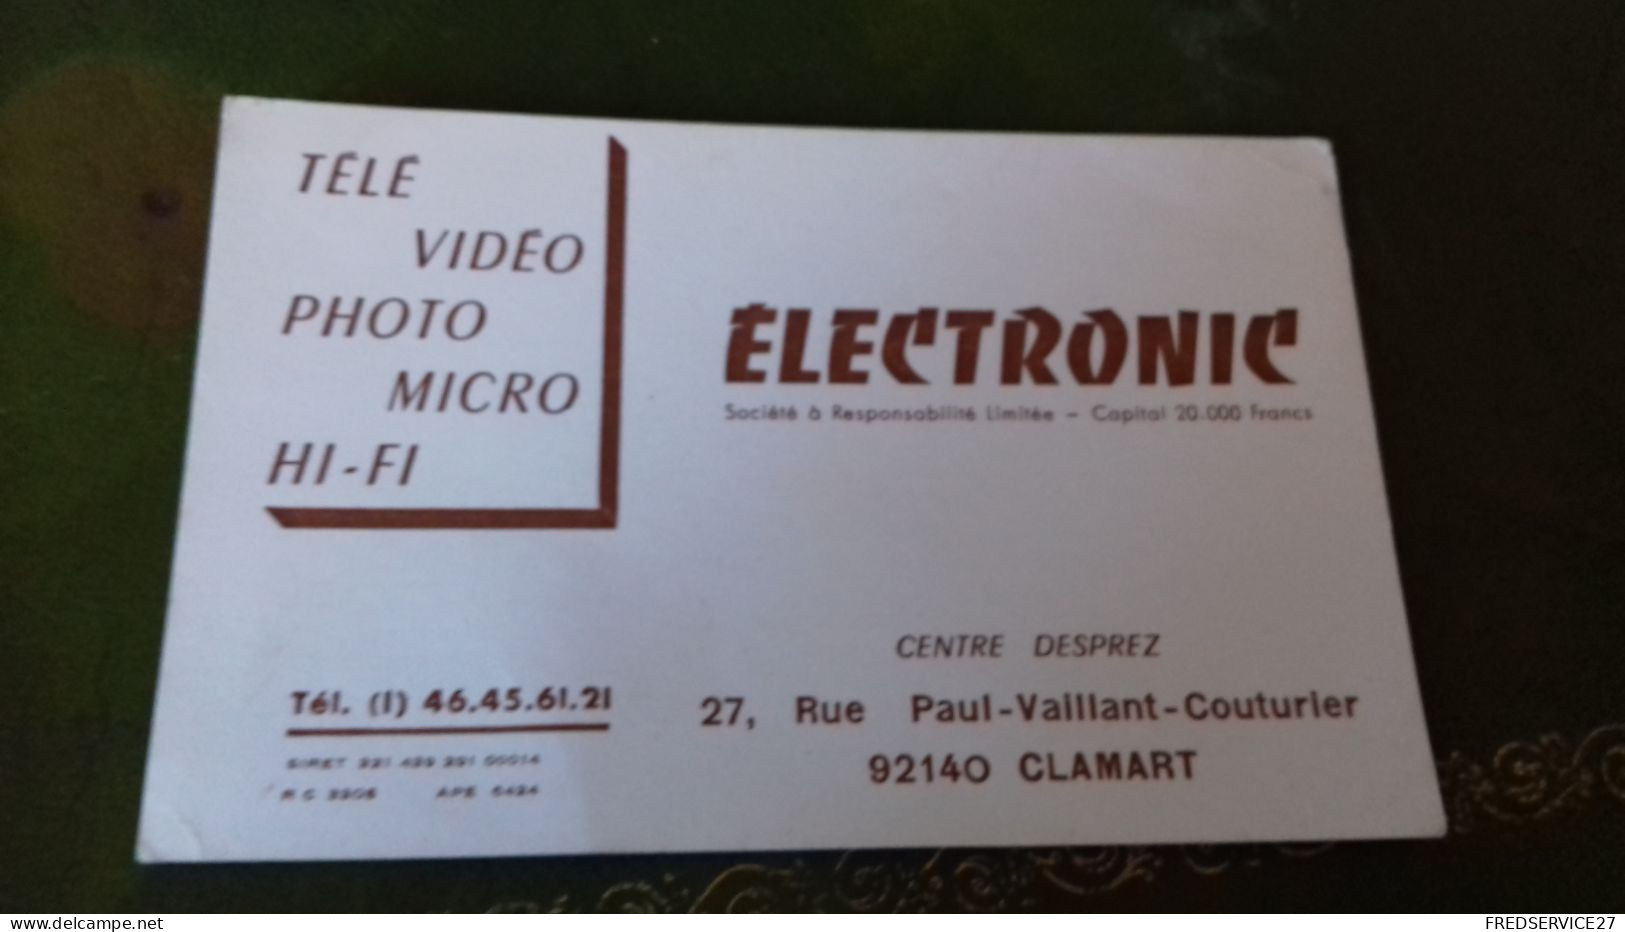 236/ CARTE DE VISITE ELECTRONIC CENTRE DESPRET CLAMART 92140 - Visiting Cards